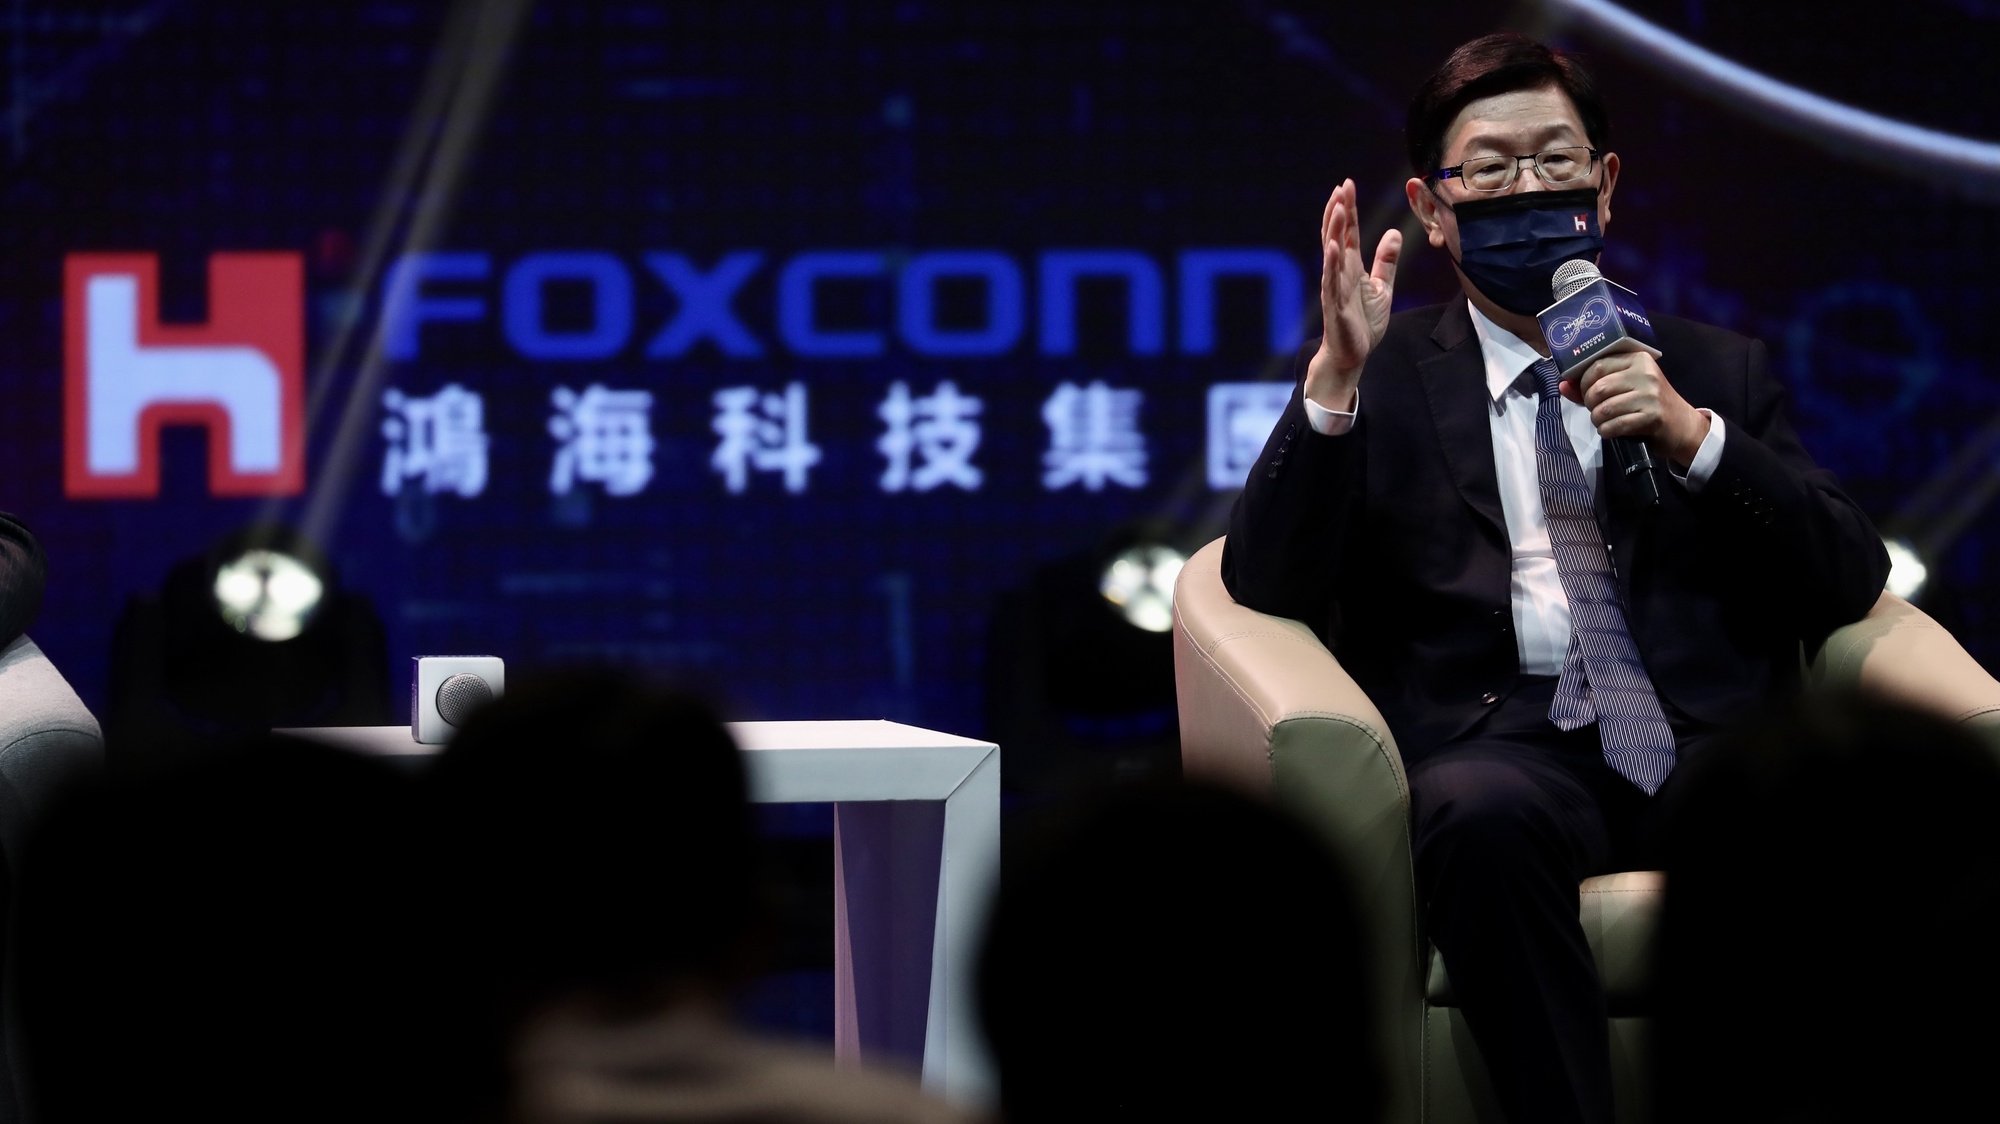 Young Liu, presidente do Foxconn Technology Group, fala durante uma conferência de imprensa no lançamento de sua linha de veículos elétricos durante o Hon Hai (Foxconn) Tech Day em Taipei, Taiwan, 18 de outubro de 2021